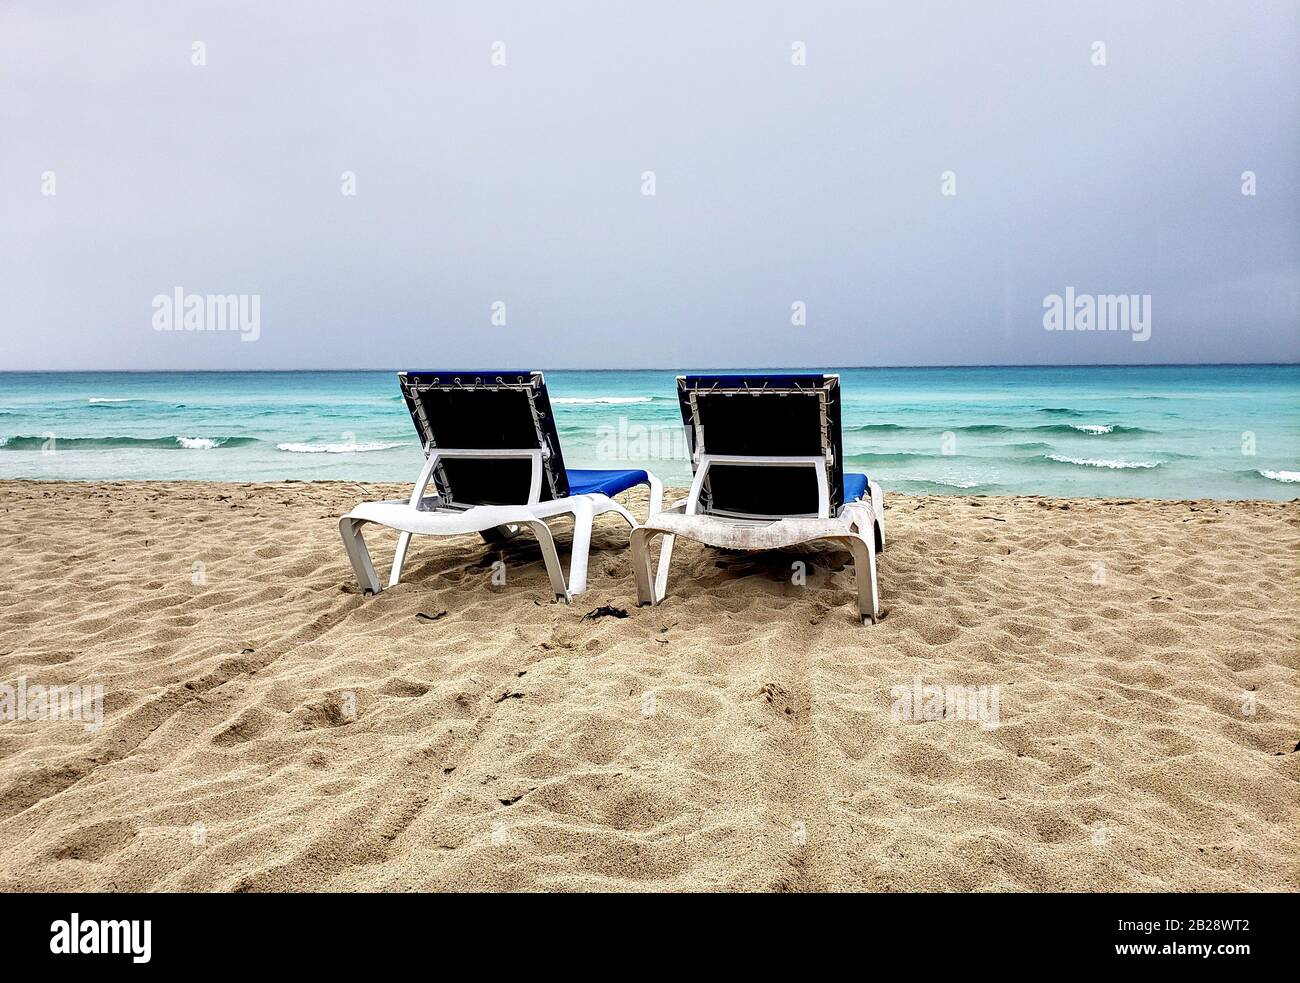 Zwei liegen, Chaiselongues an einem kubanischen Strand vor dem Sturm. Bewölktes und windes Wetter und Himmel. Stockfoto